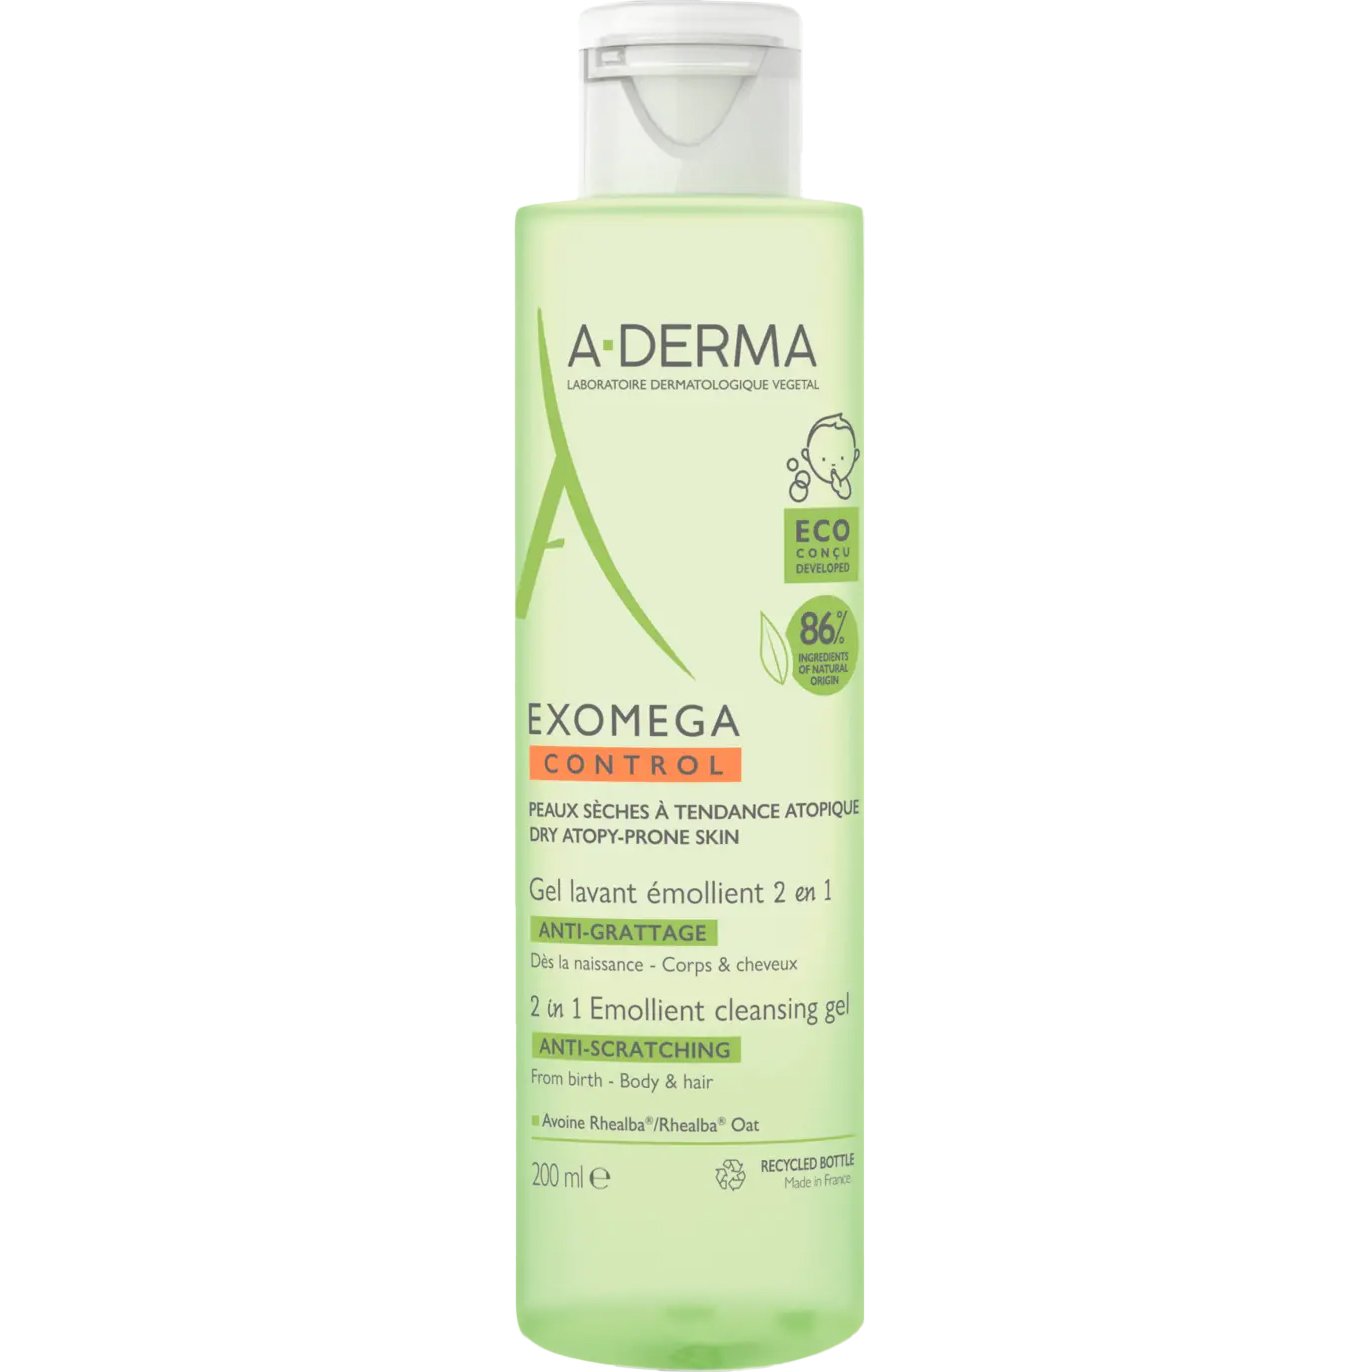 A-Derma Exomega Control 2in1 Anti-Scratching Emolient Cleansing Gel Gel Καθαρισμού για Σώμα – Μαλλιά, Κατάλληλο για Ξηρό Δέρμα με Τάση Ατοπικού Εκζέματος 200ml